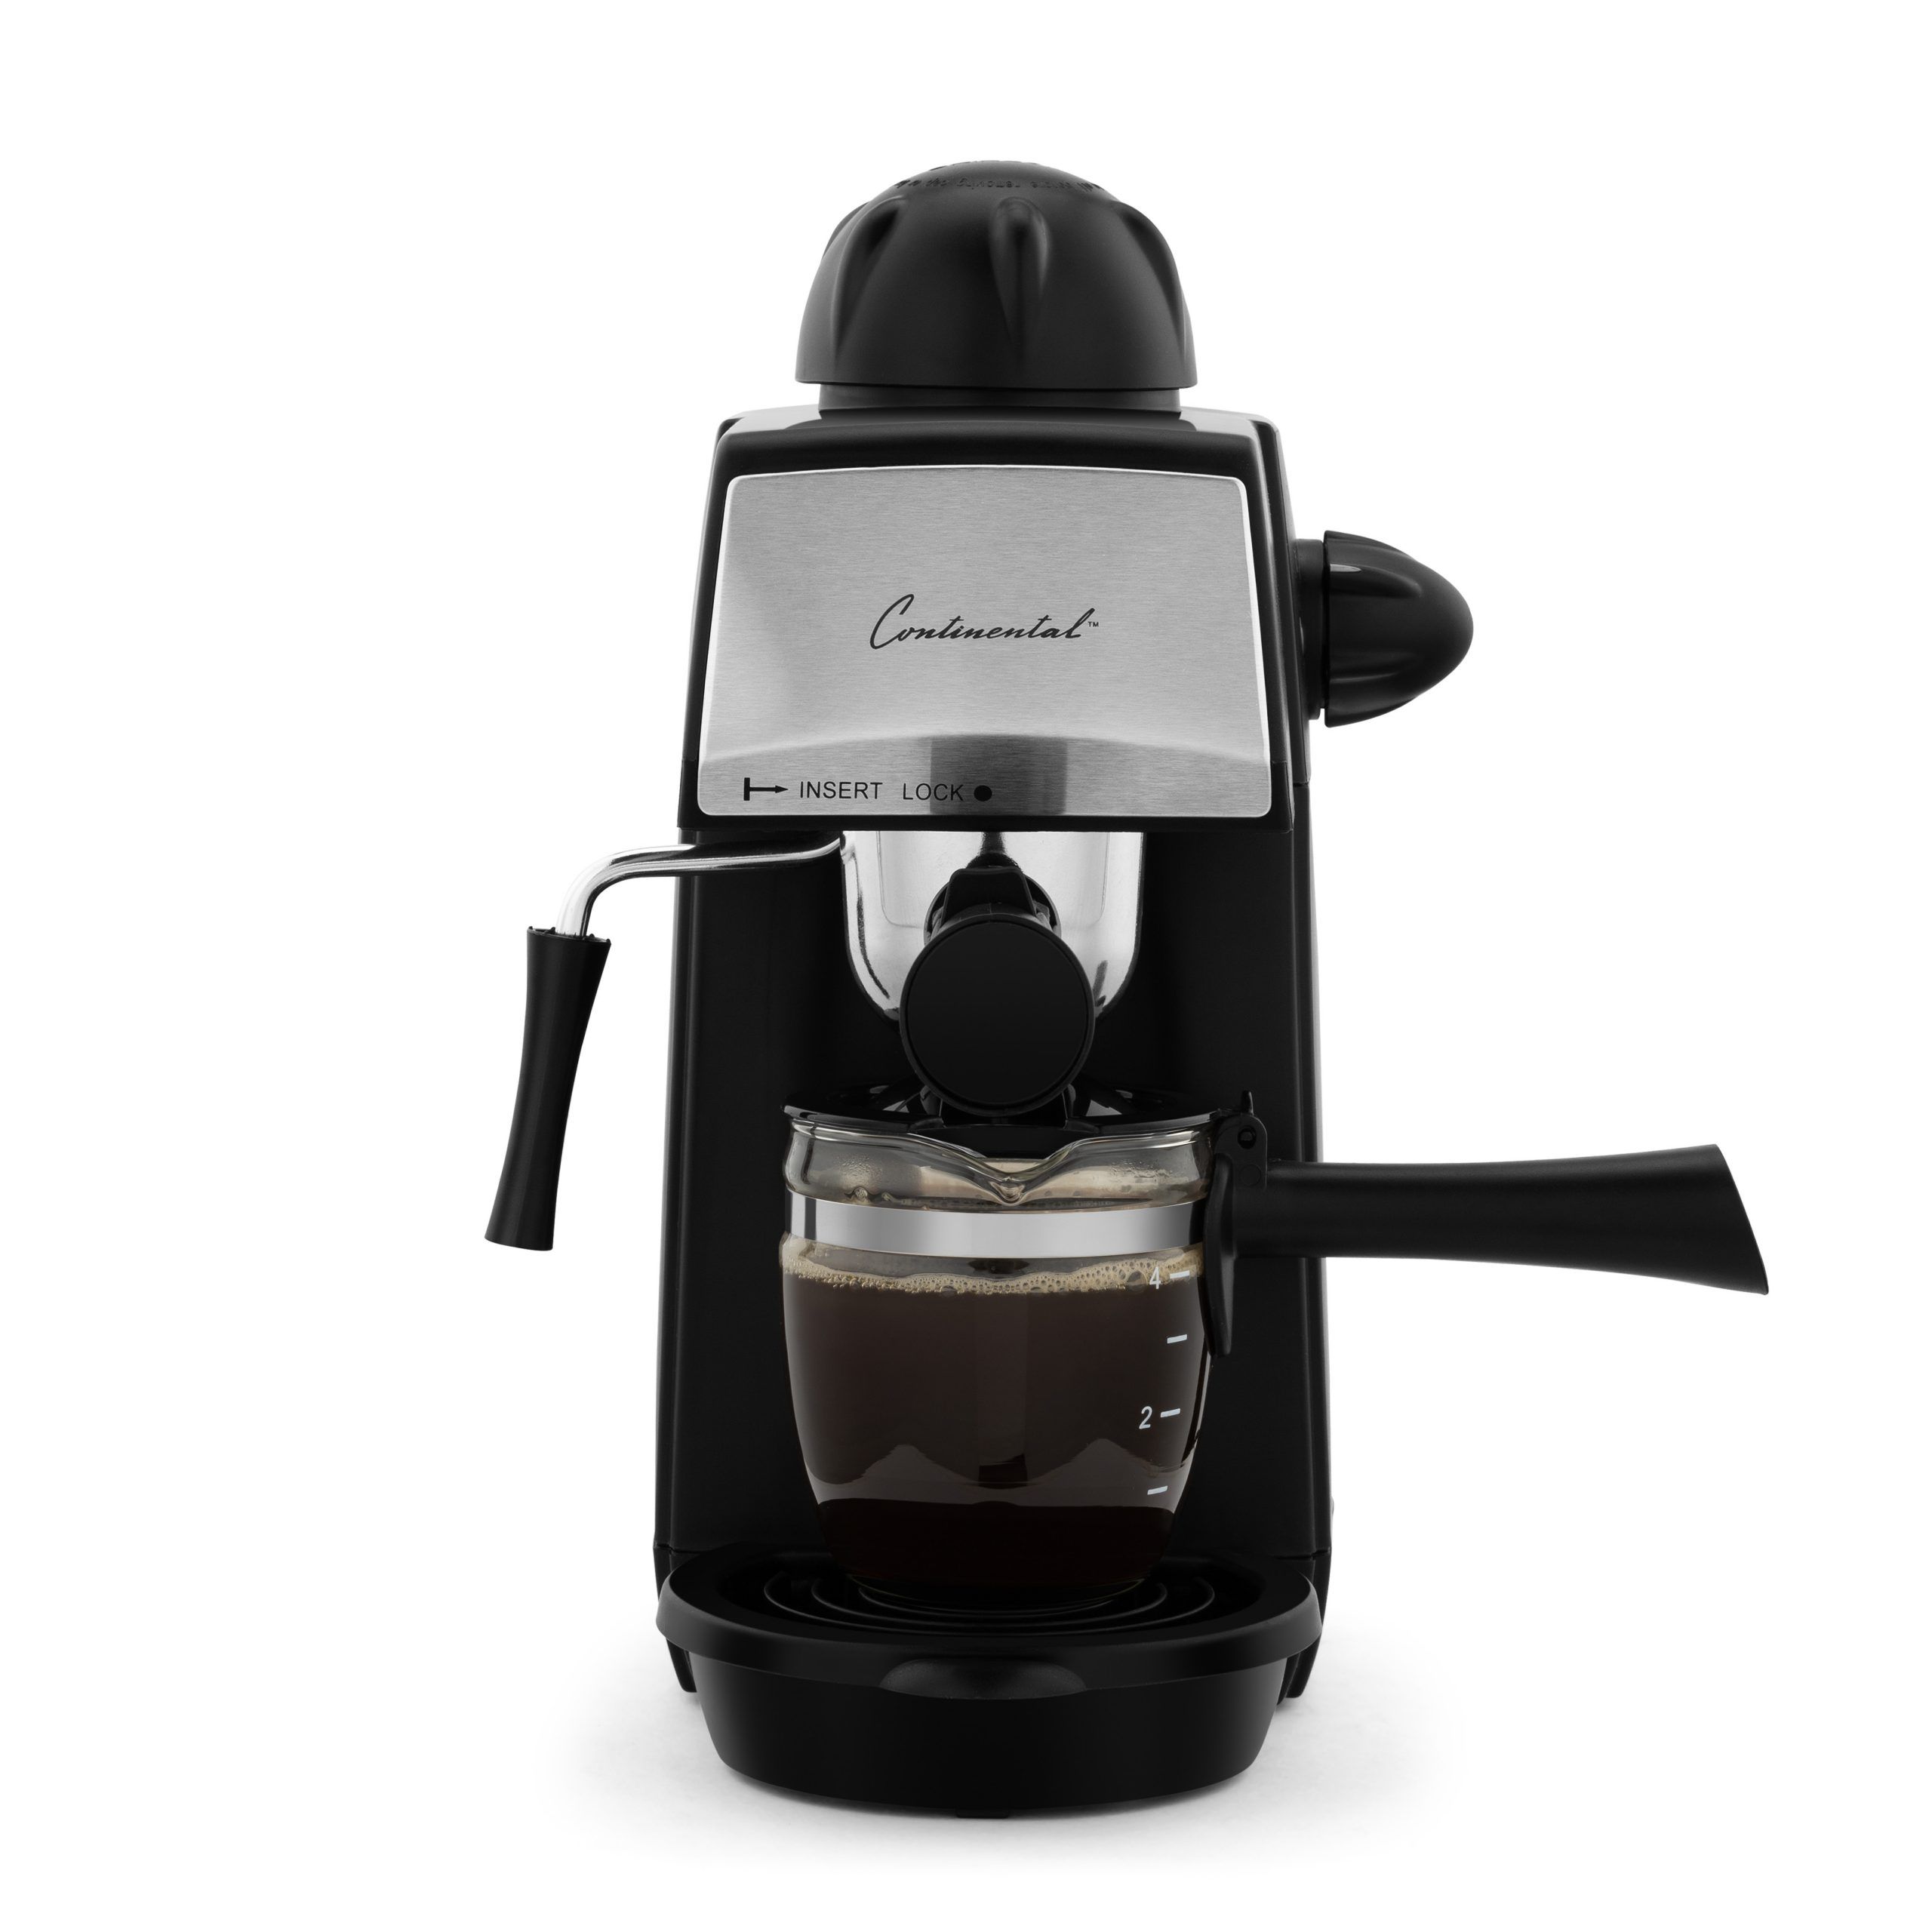 Pro Espresso y máquina de capuchino Coffee maker Coffee